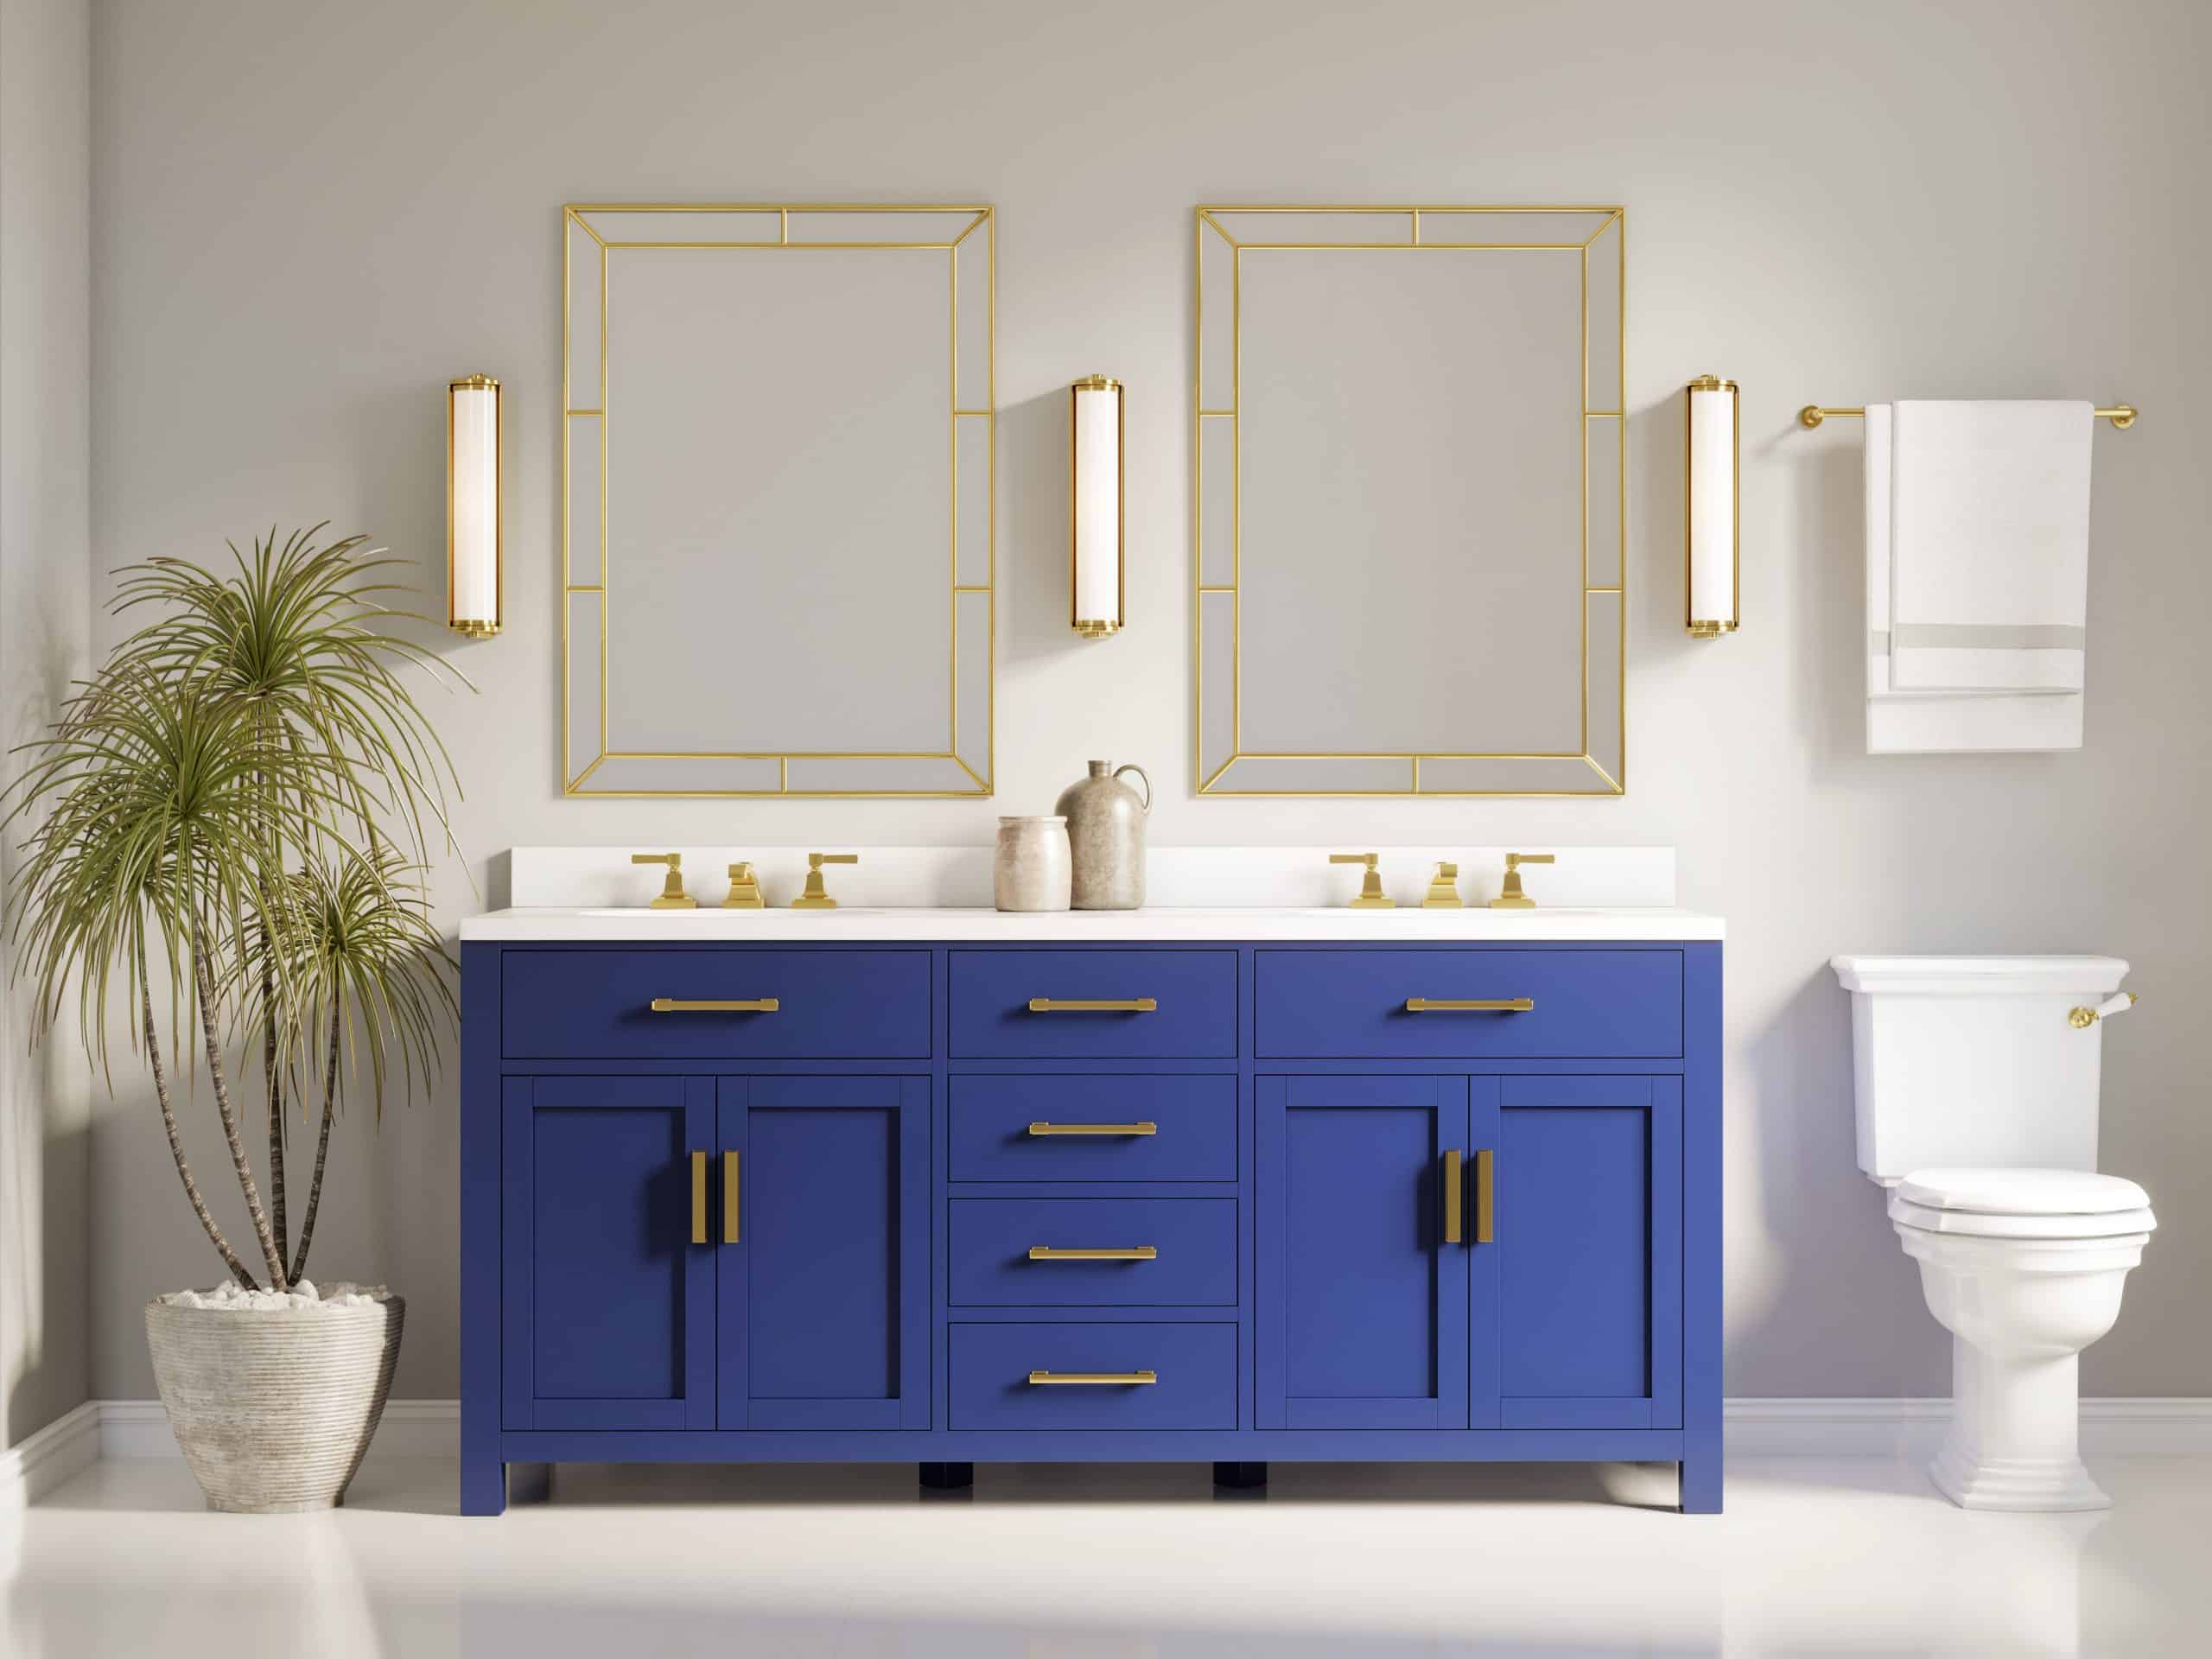 Bathroom de luxe – how to arrange it?